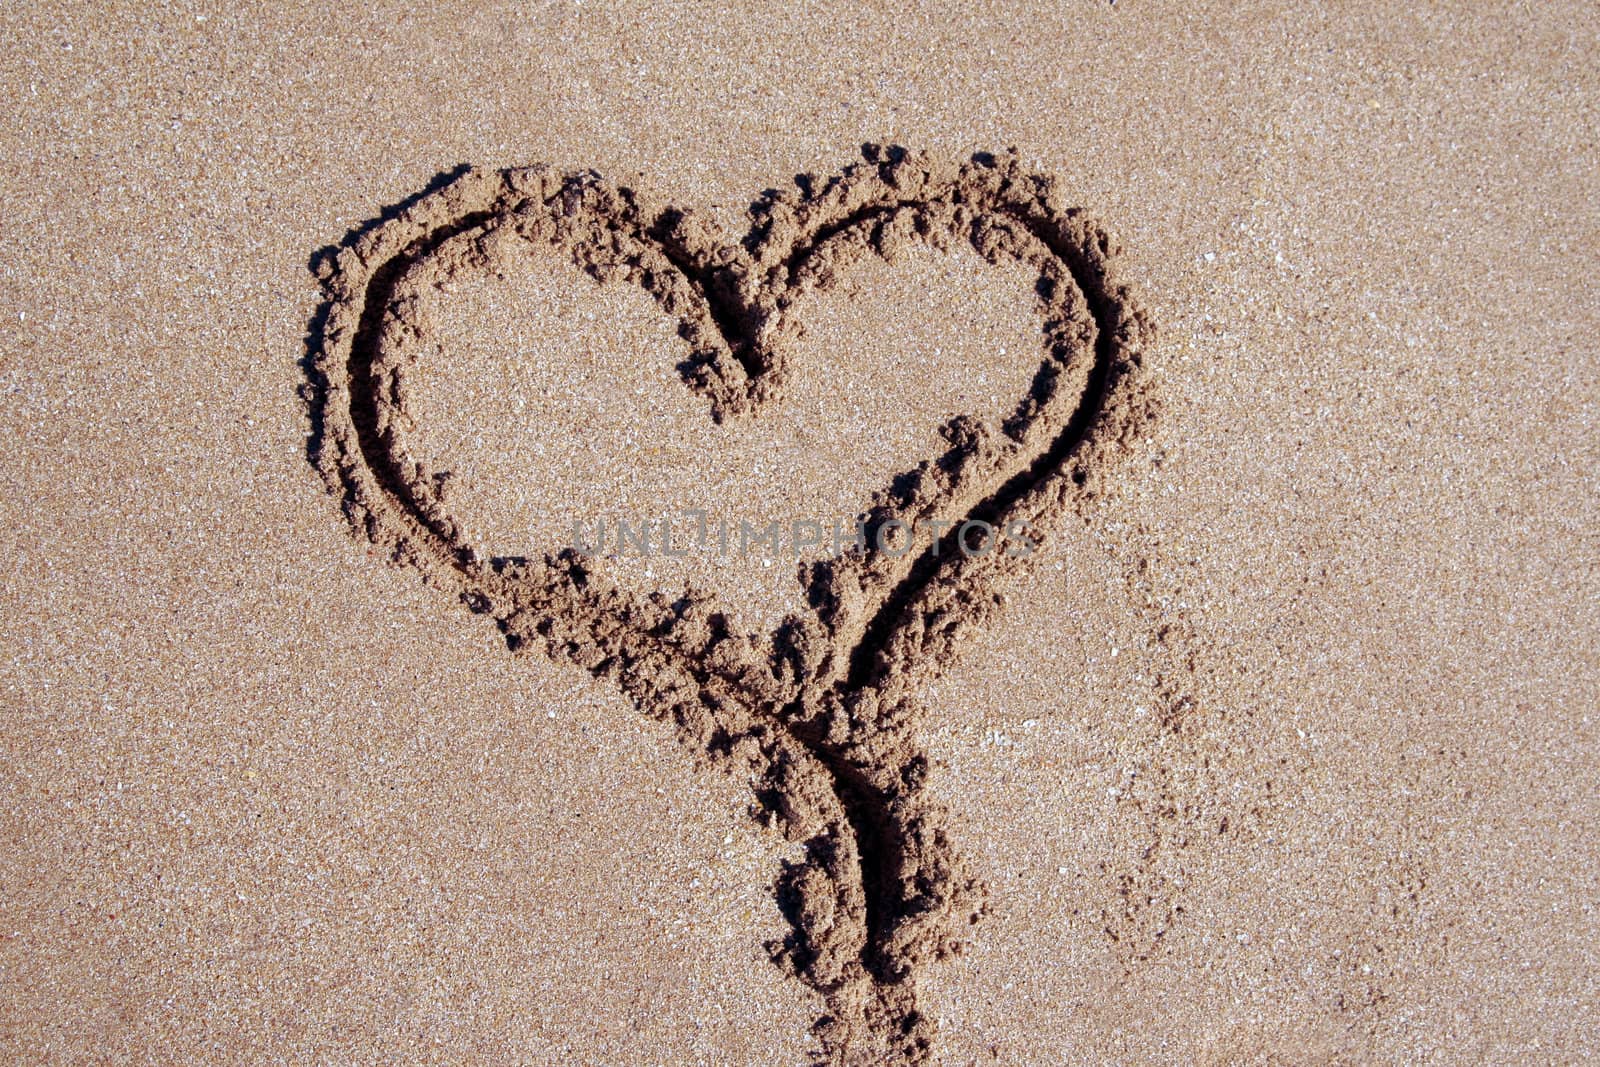 Heart Inscription On A Sand Beach At The Pacific Coast